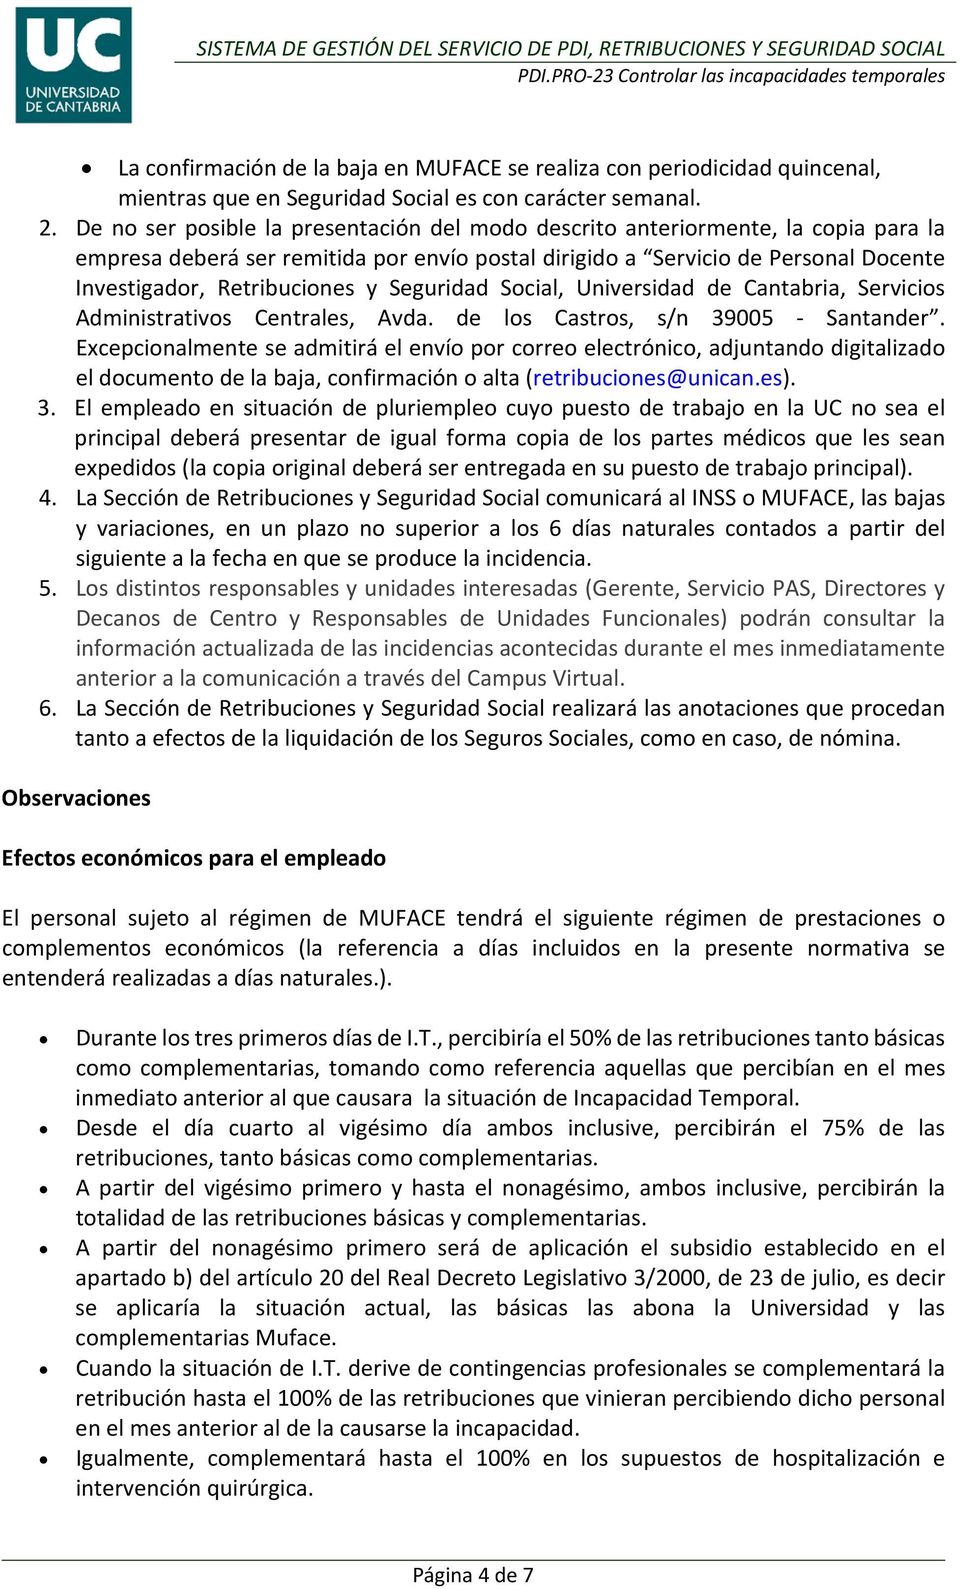 Seguridad Social, Universidad de Cantabria, Servicios Administrativos Centrales, Avda. de los Castros, s/n 39005 Santander.